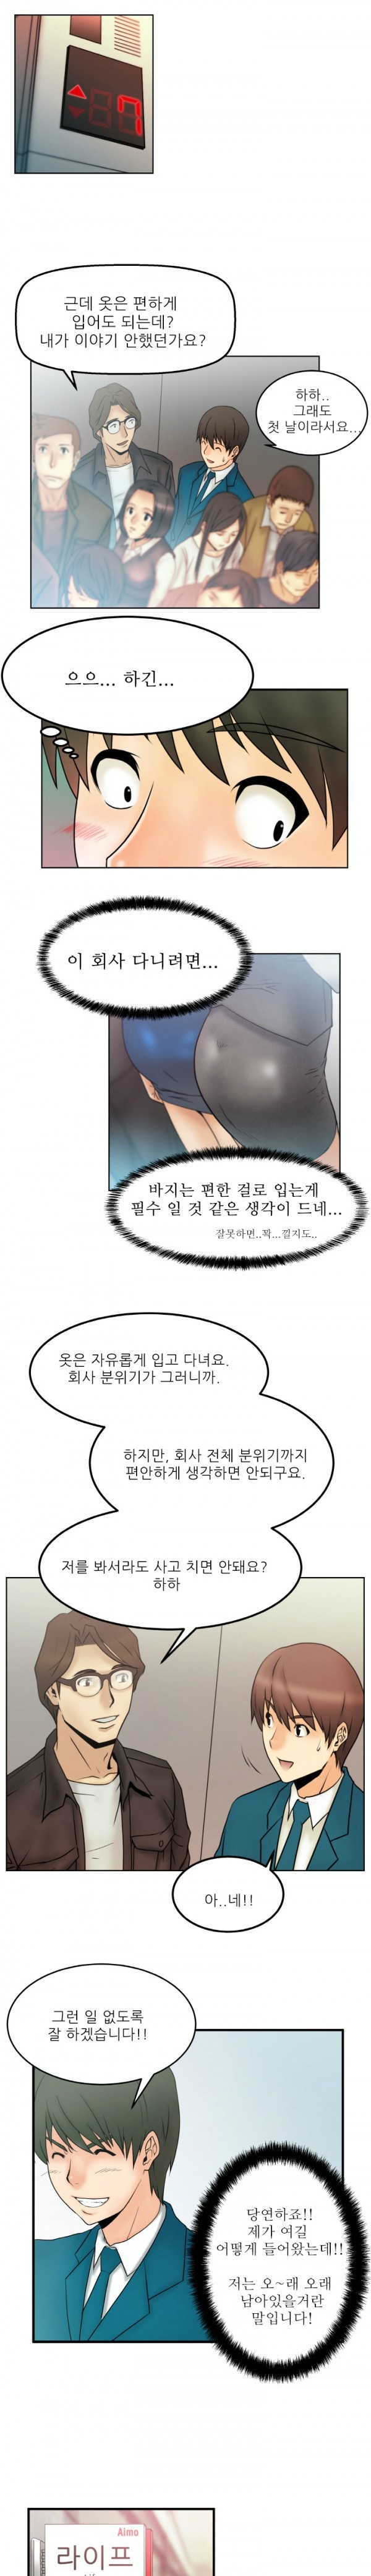 [Minu Mindu] Office Lady Vol. 1 [Korean] 17